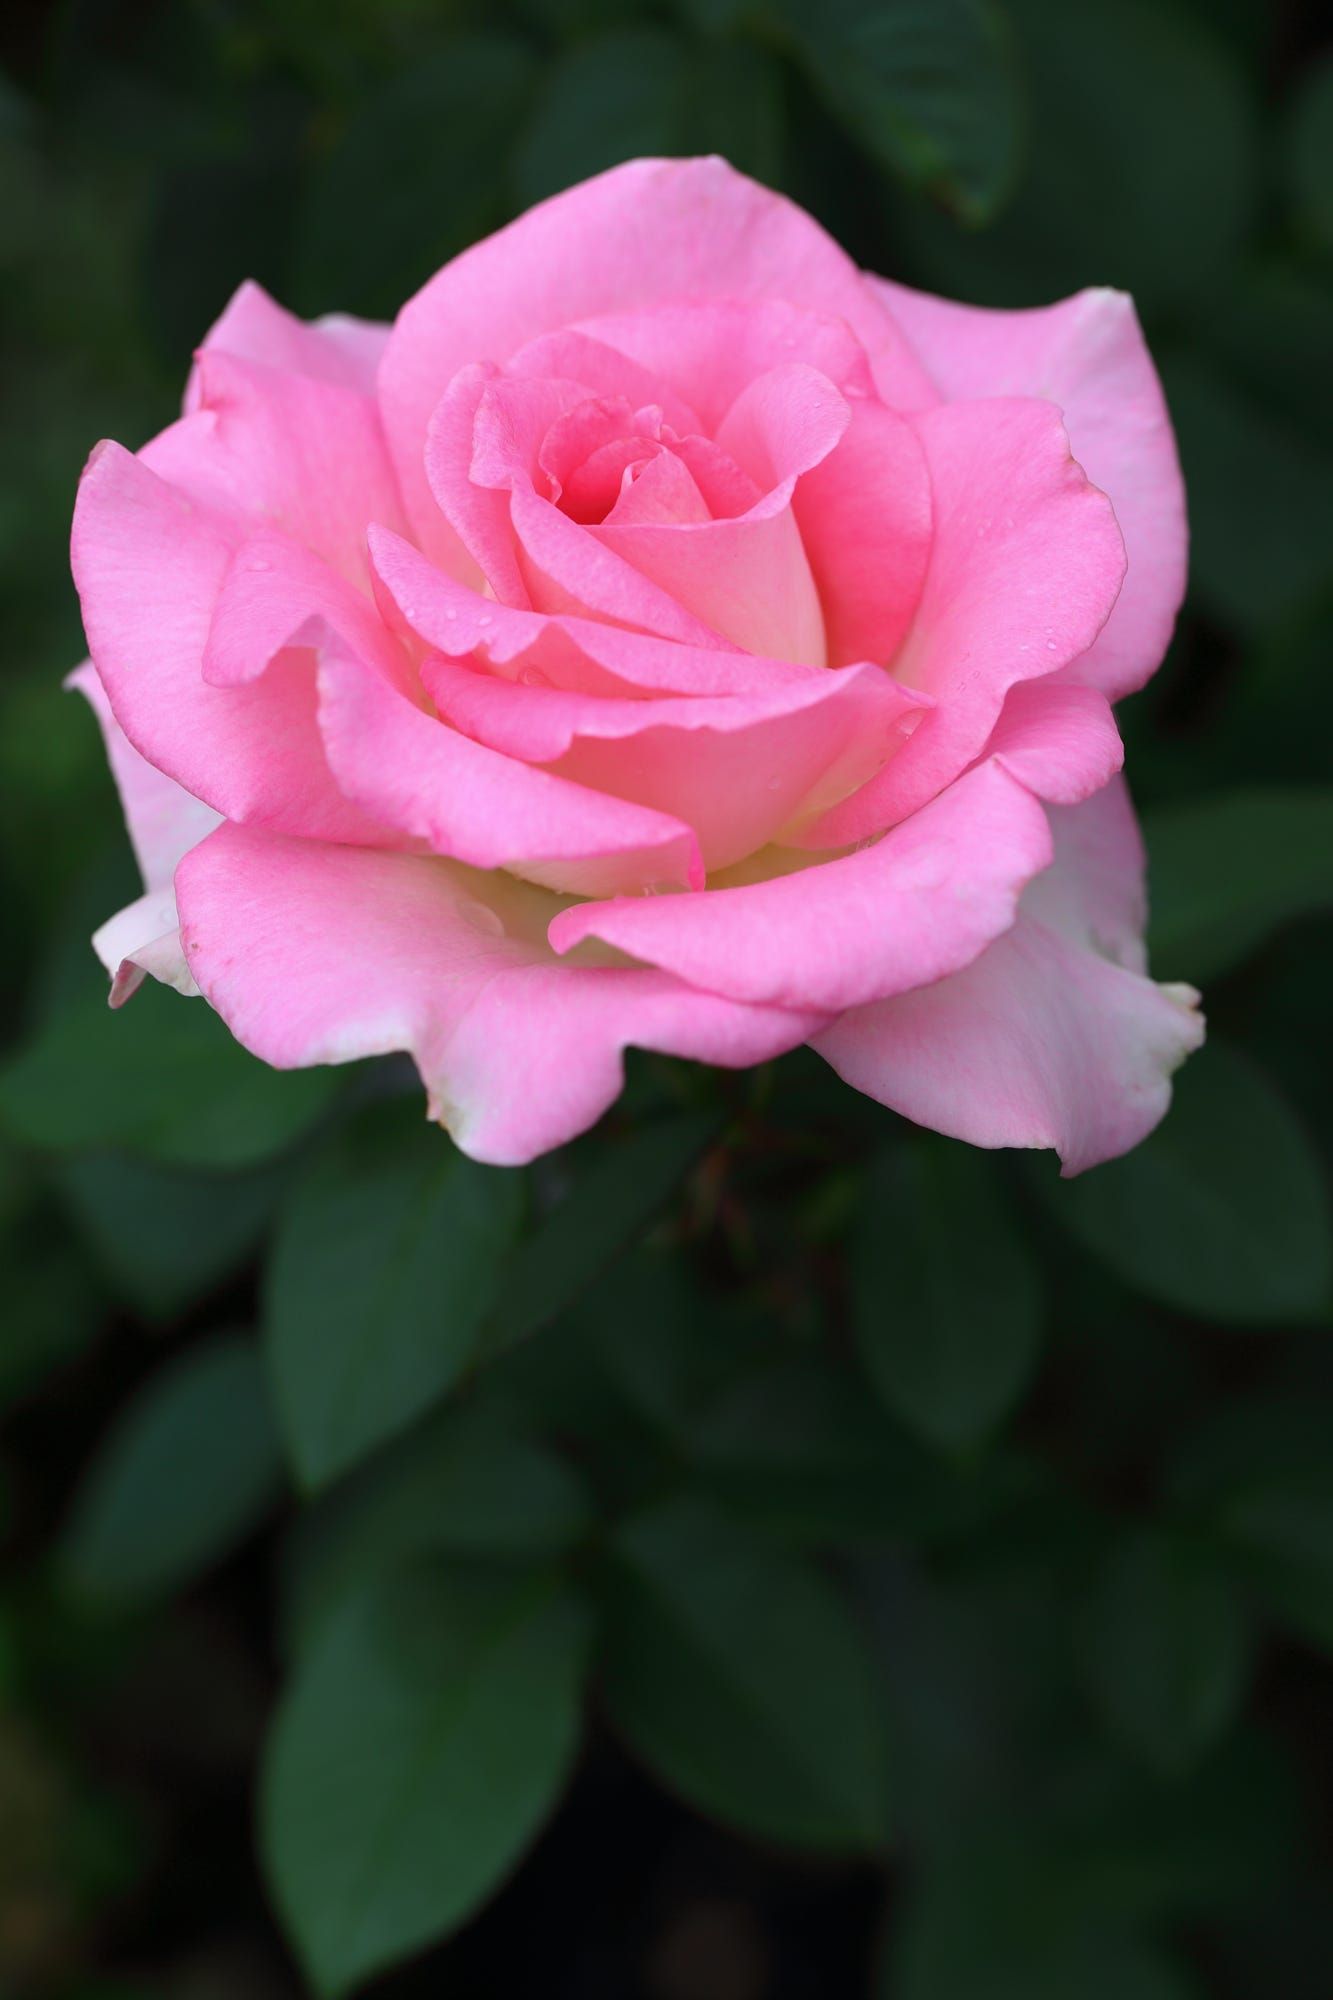 Fond a gorgeous pink rose in a garden. | Garden Pests | Pinterest ...